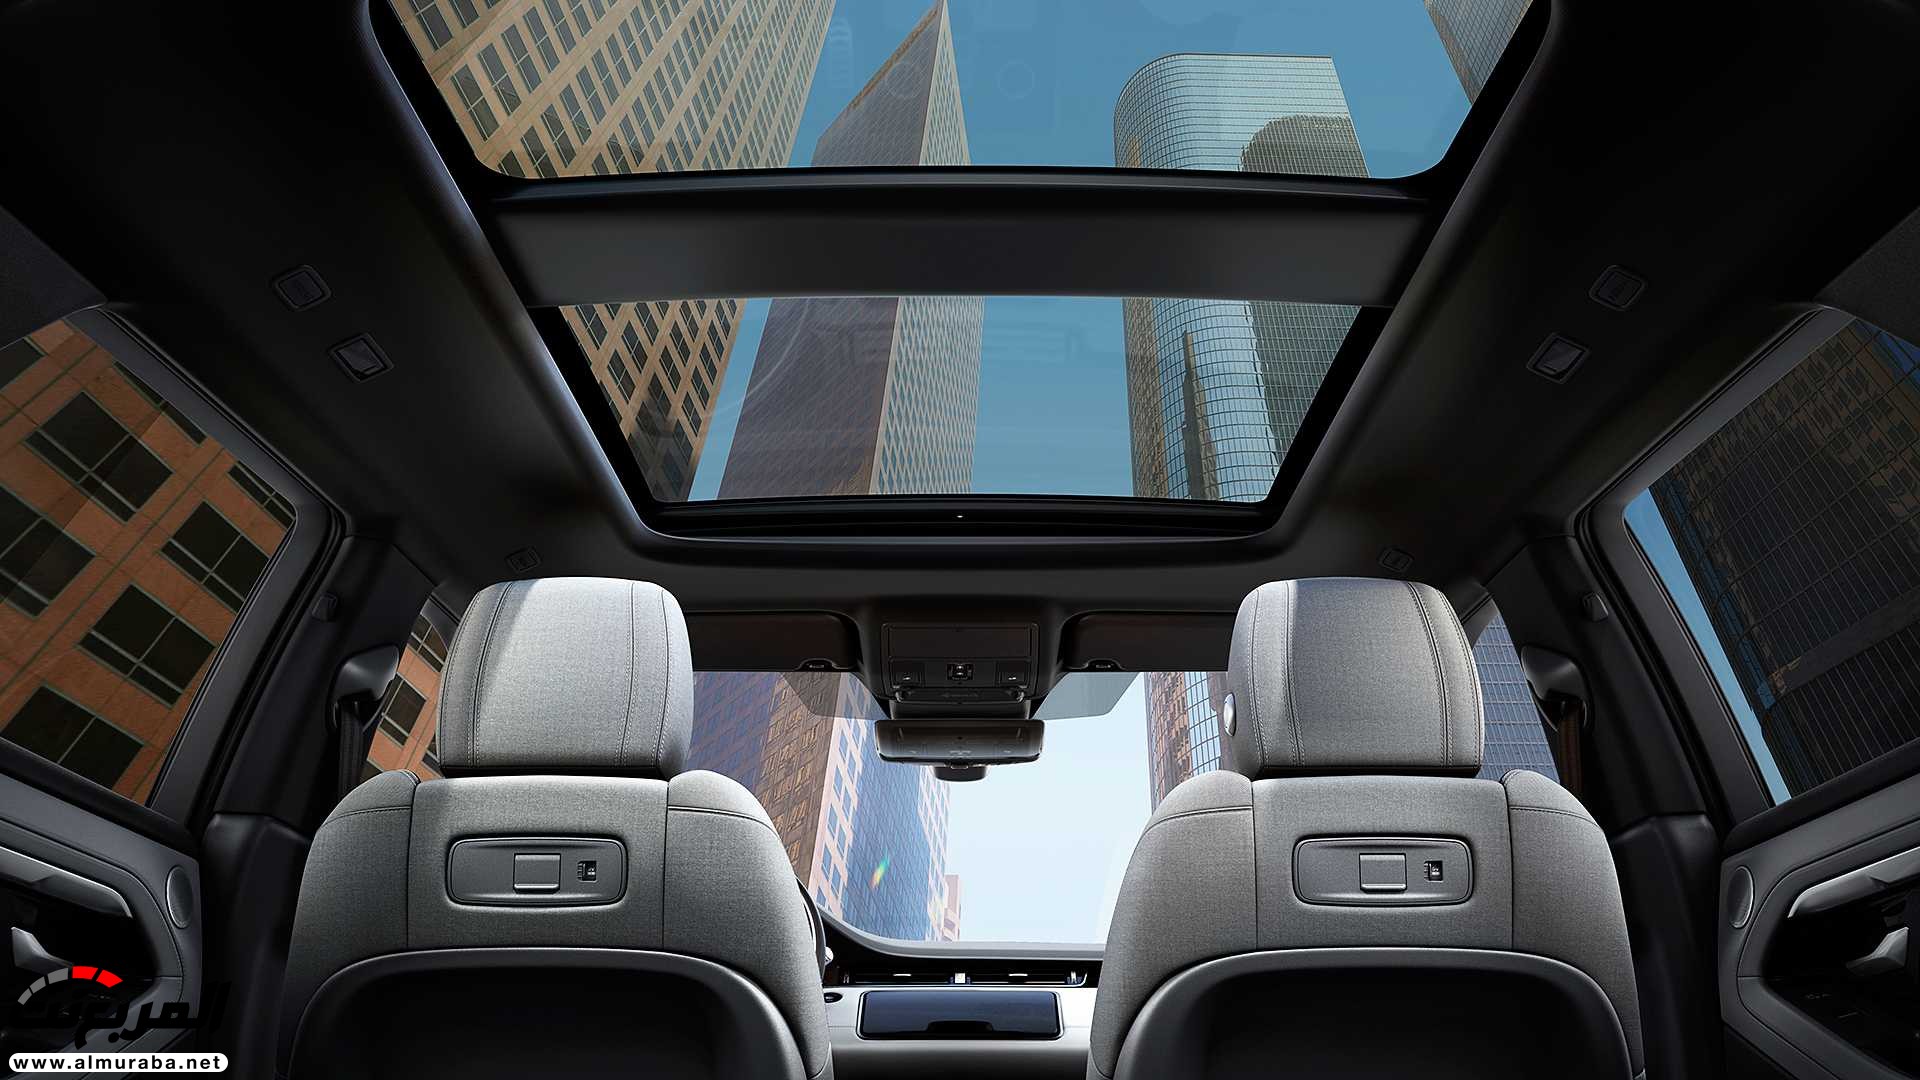 اهم 7 معلومات عن رنج روفر ايفوك 2020 الجديدة كلياً Range Rover Evoque 10